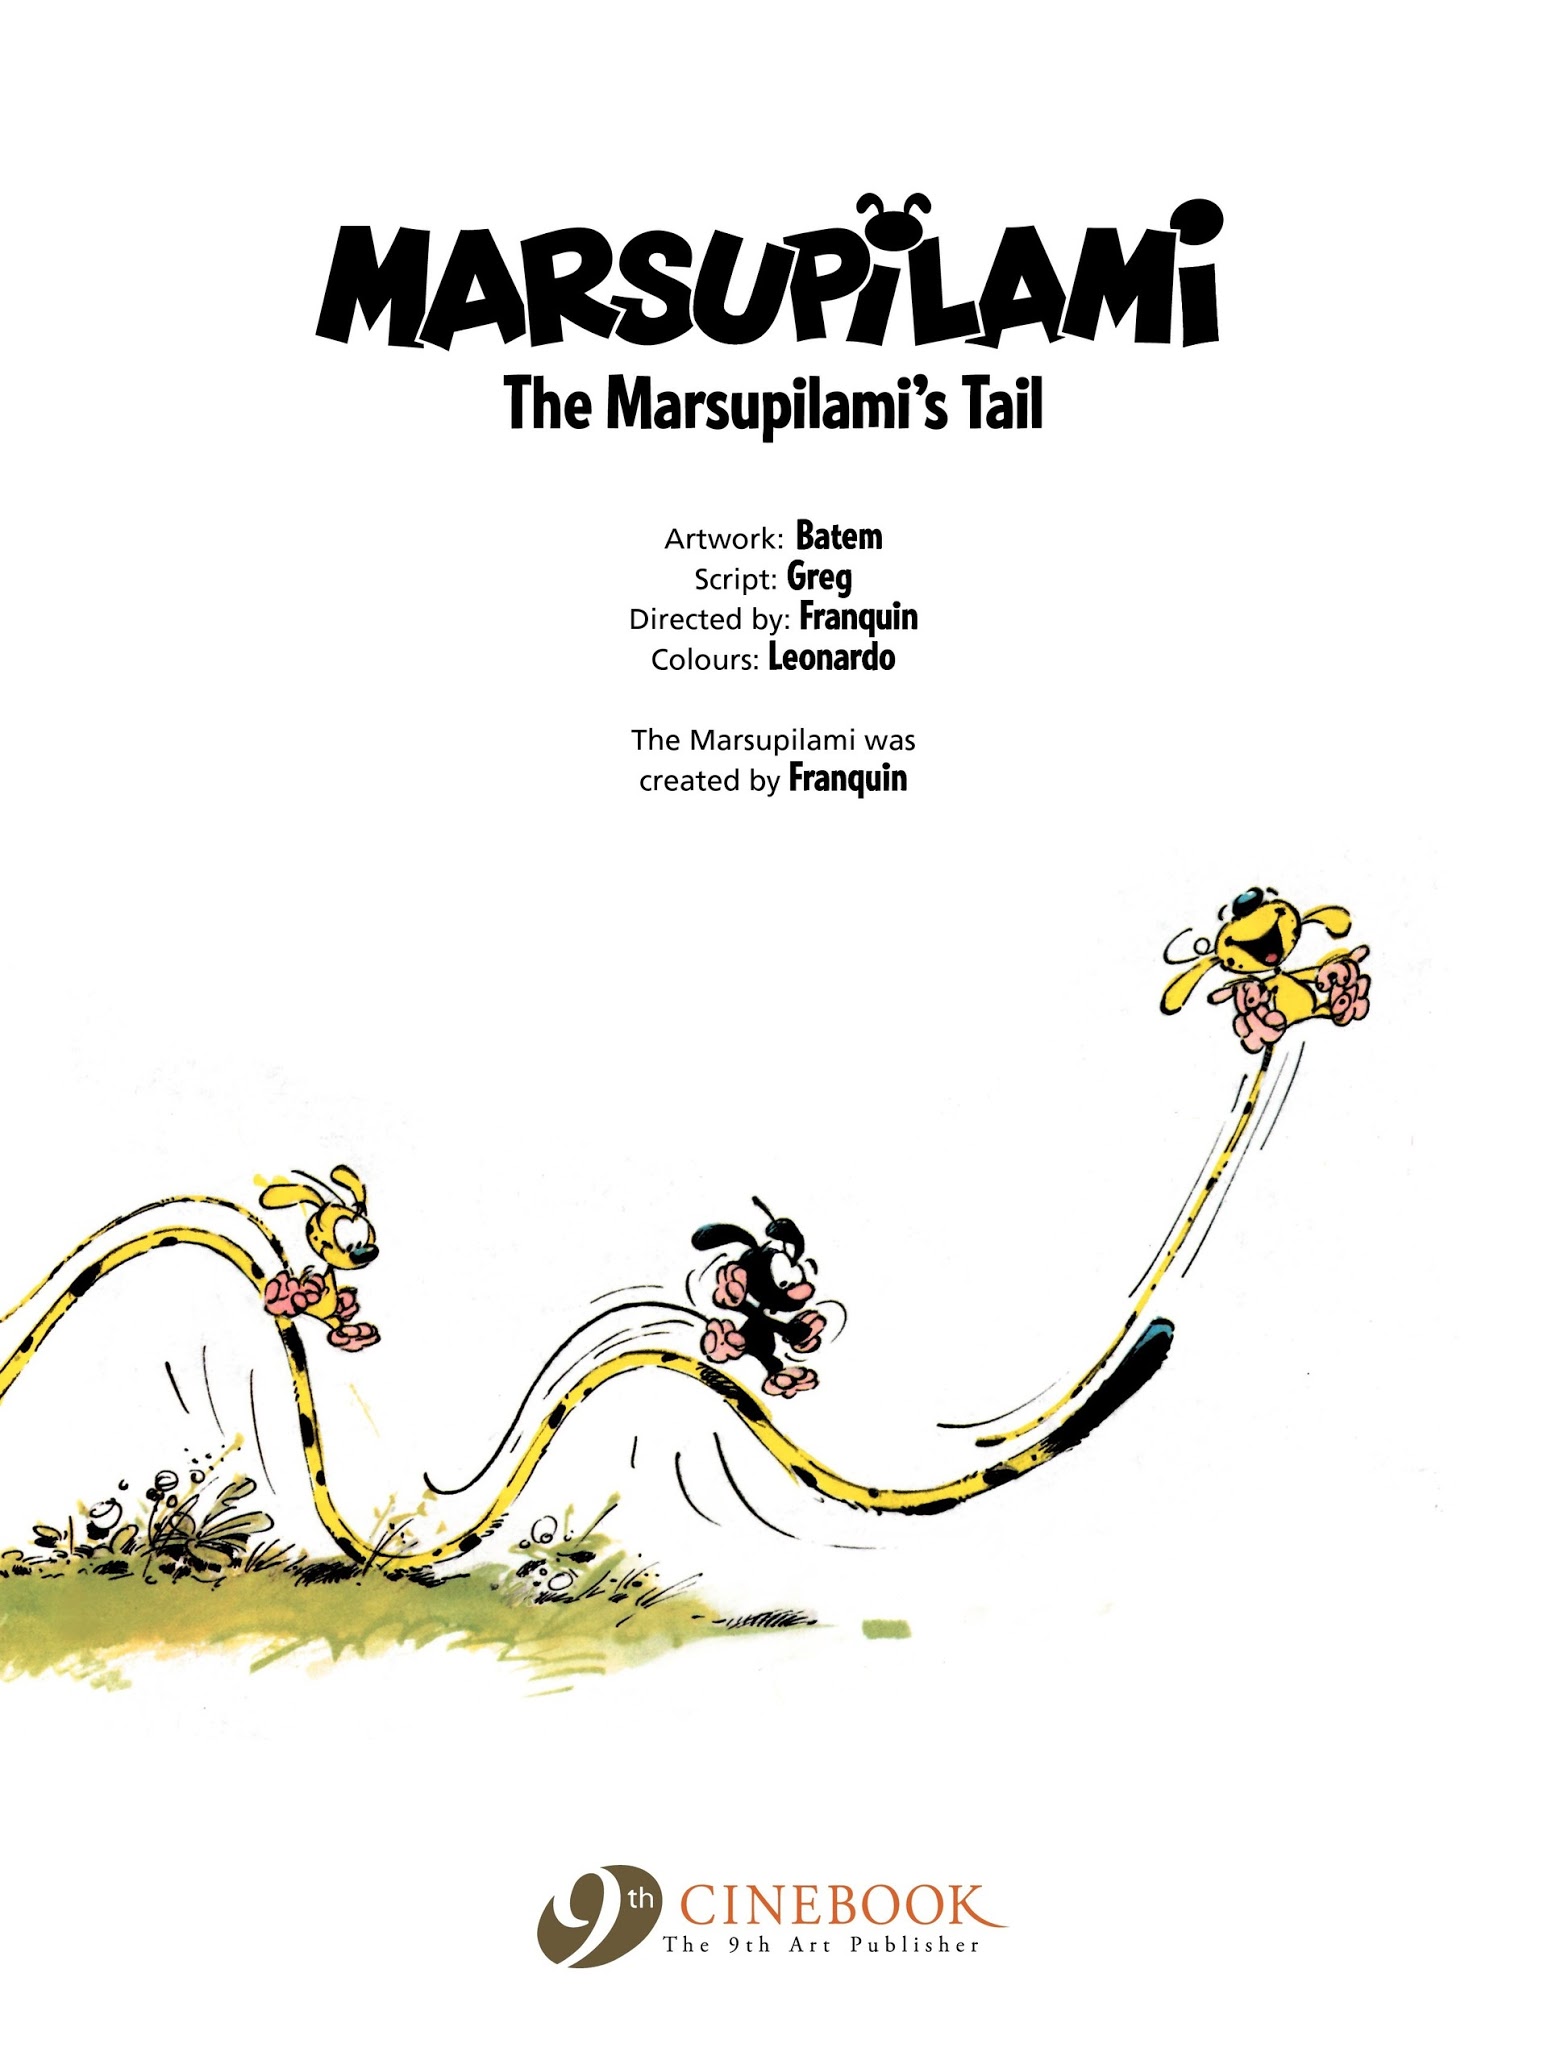 Read online Marsupilami comic -  Issue #1 - 3